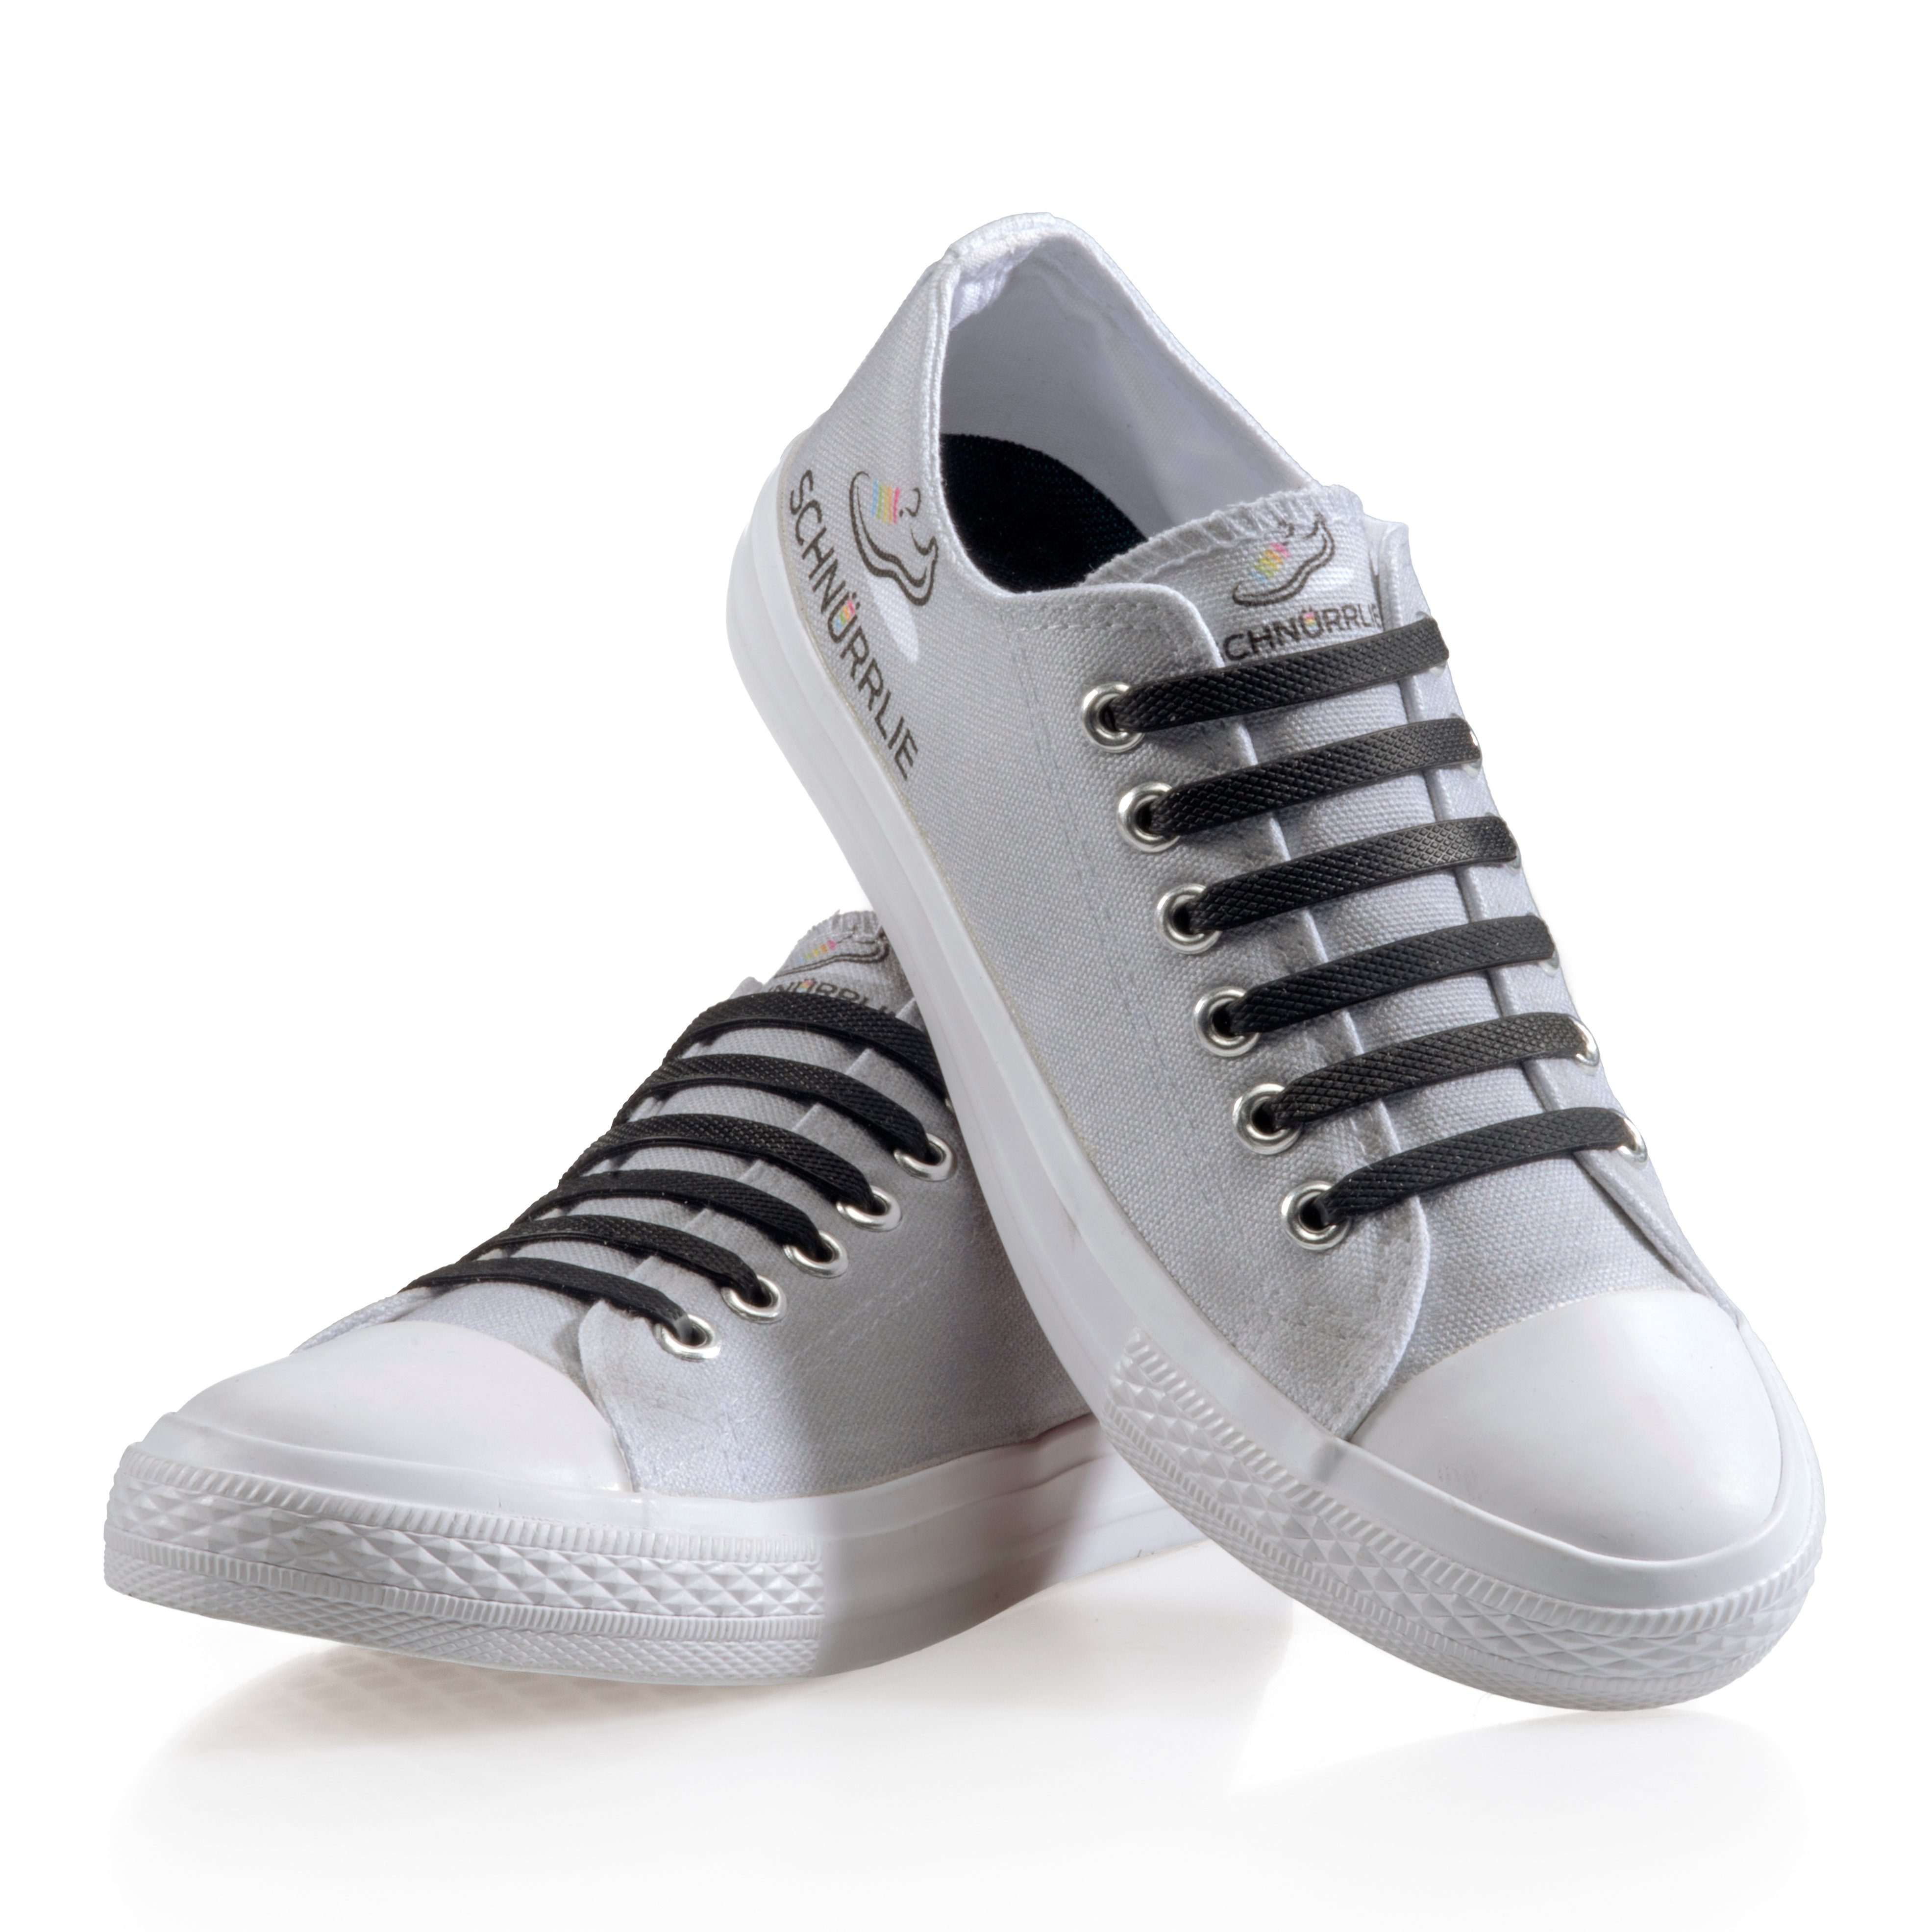 SCHNÜRRLIE Schnürsenkel Silikon elastische Sneaker, Schnürbänder flache für - Schwarz Sportschuhe Laces, Turnschuhe, uvm